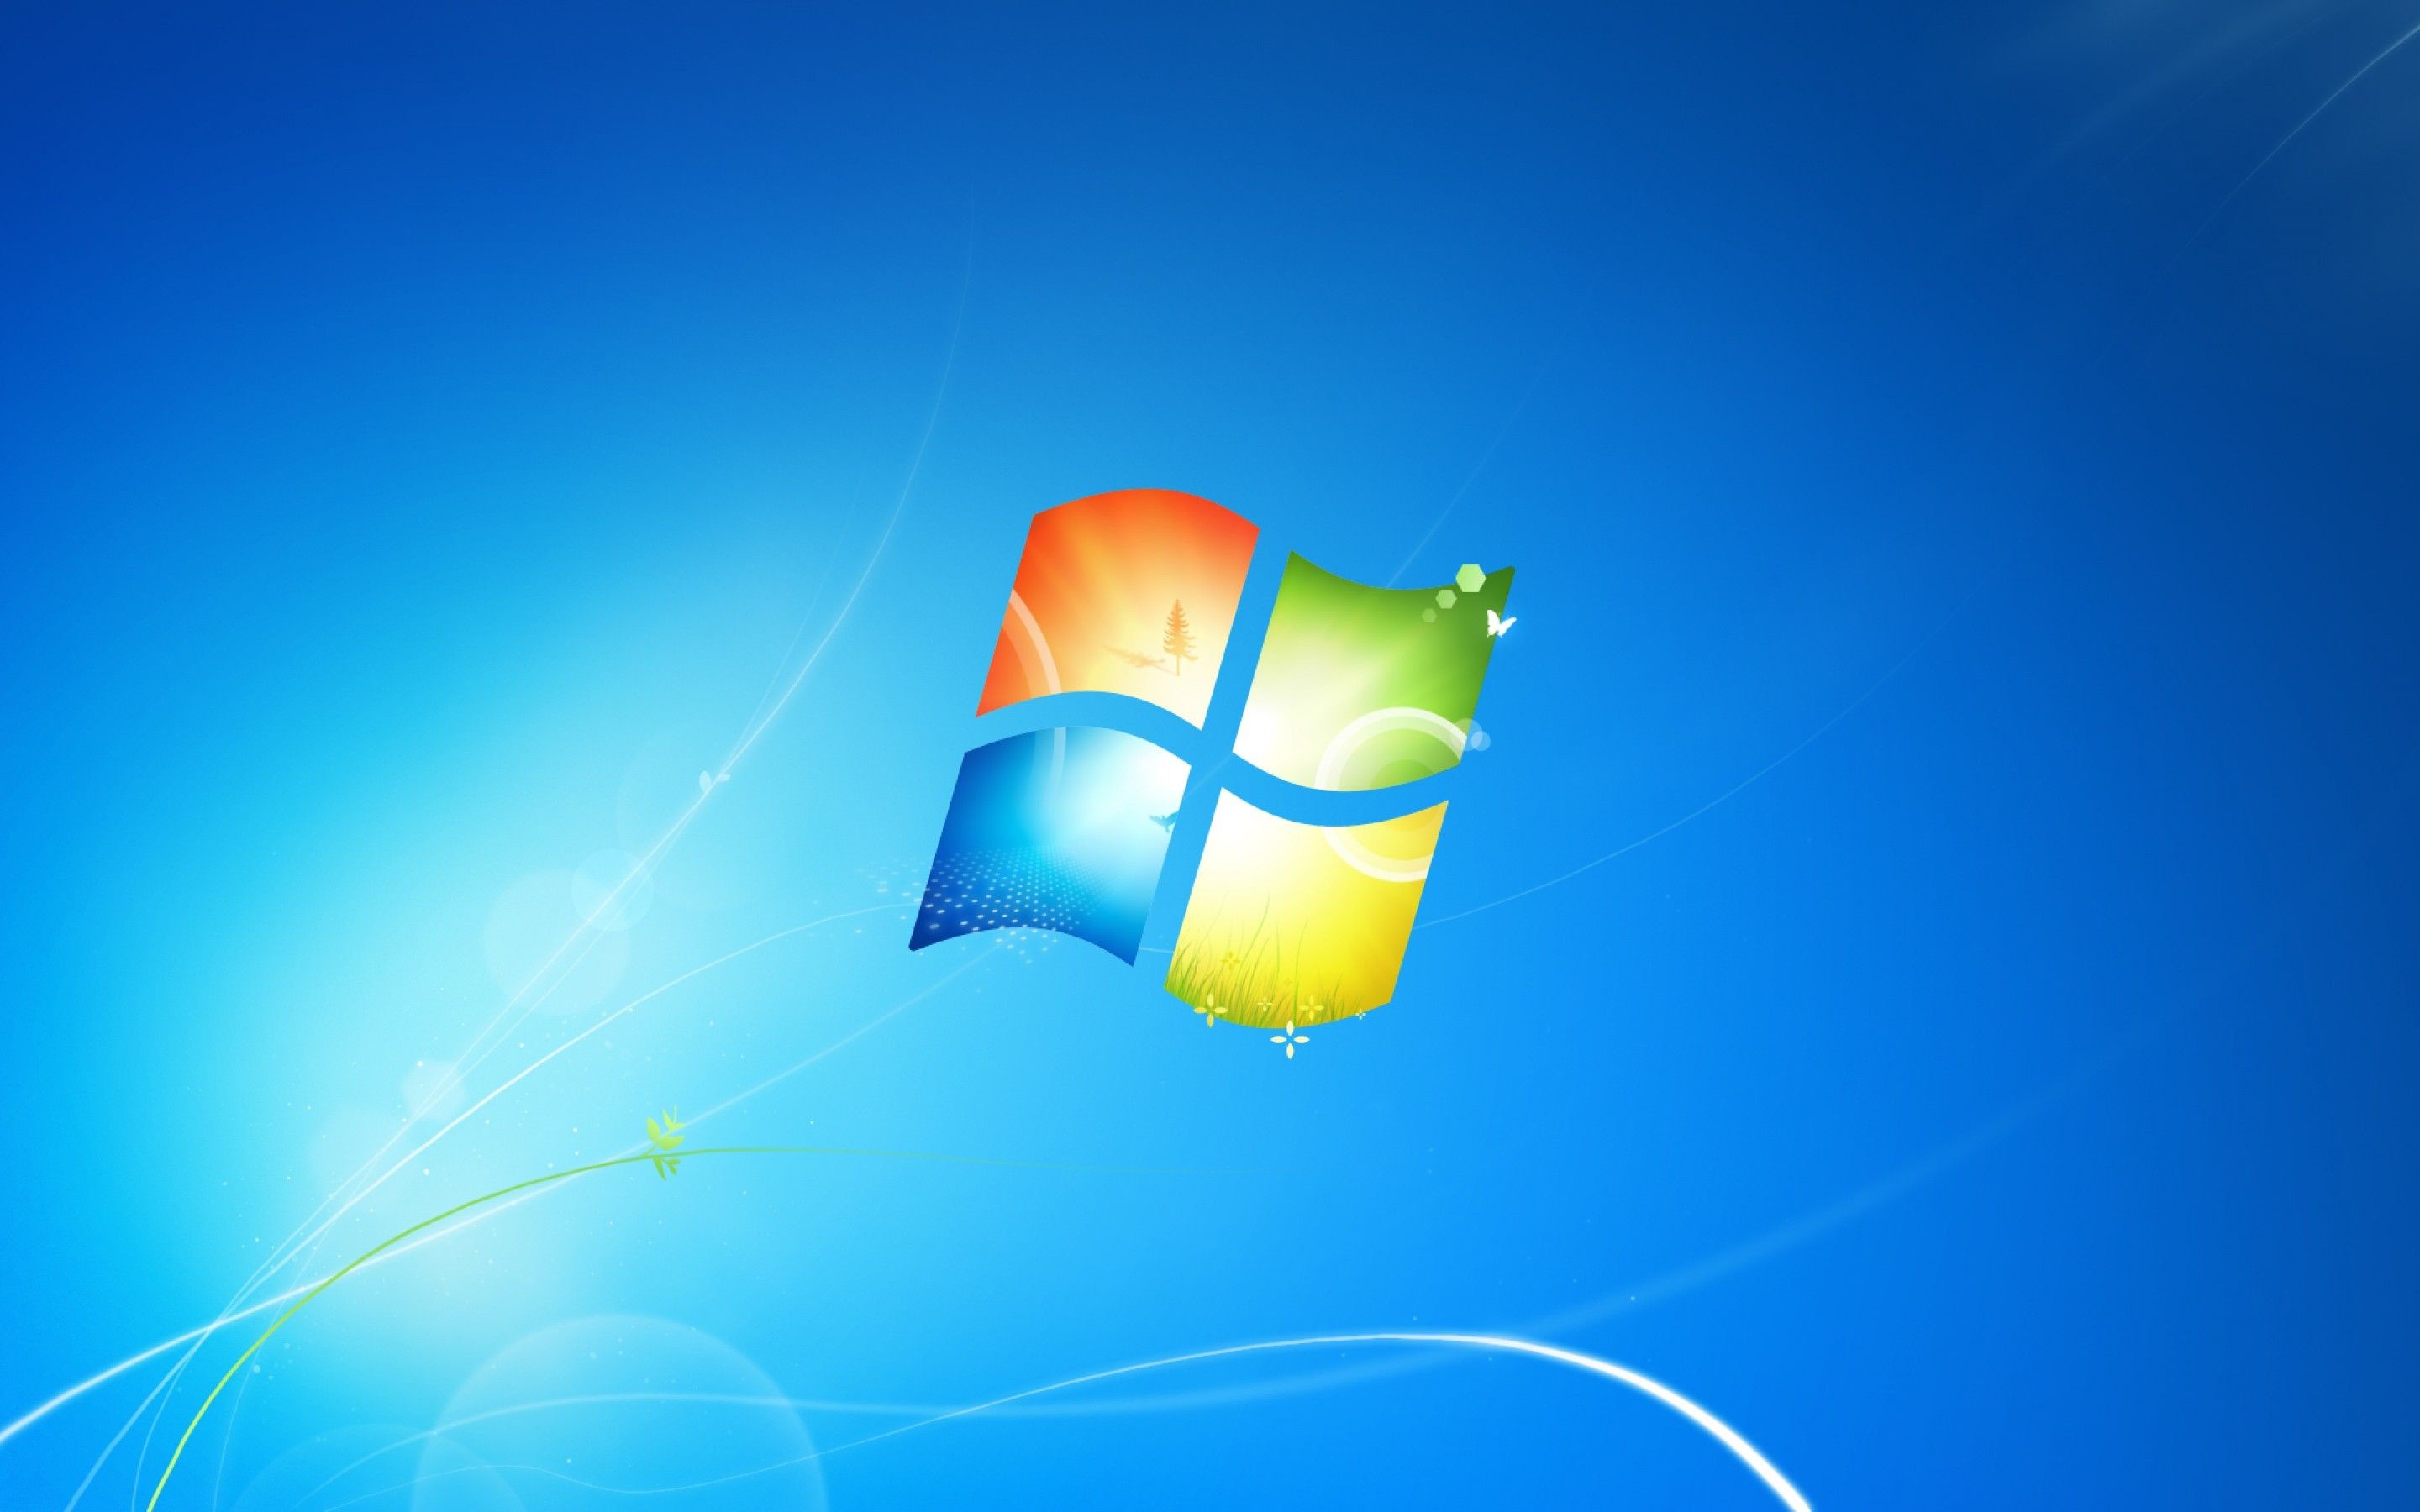 Đánh giá của bạn về phong cách hiện đại và màu sắc đa dạng của Desktop backgrounds Microsoft sẽ được nâng cao qua mỗi bức ảnh nền mới. Hãy cập nhật ngay để tạo sự mới lạ cho quá trình làm việc.